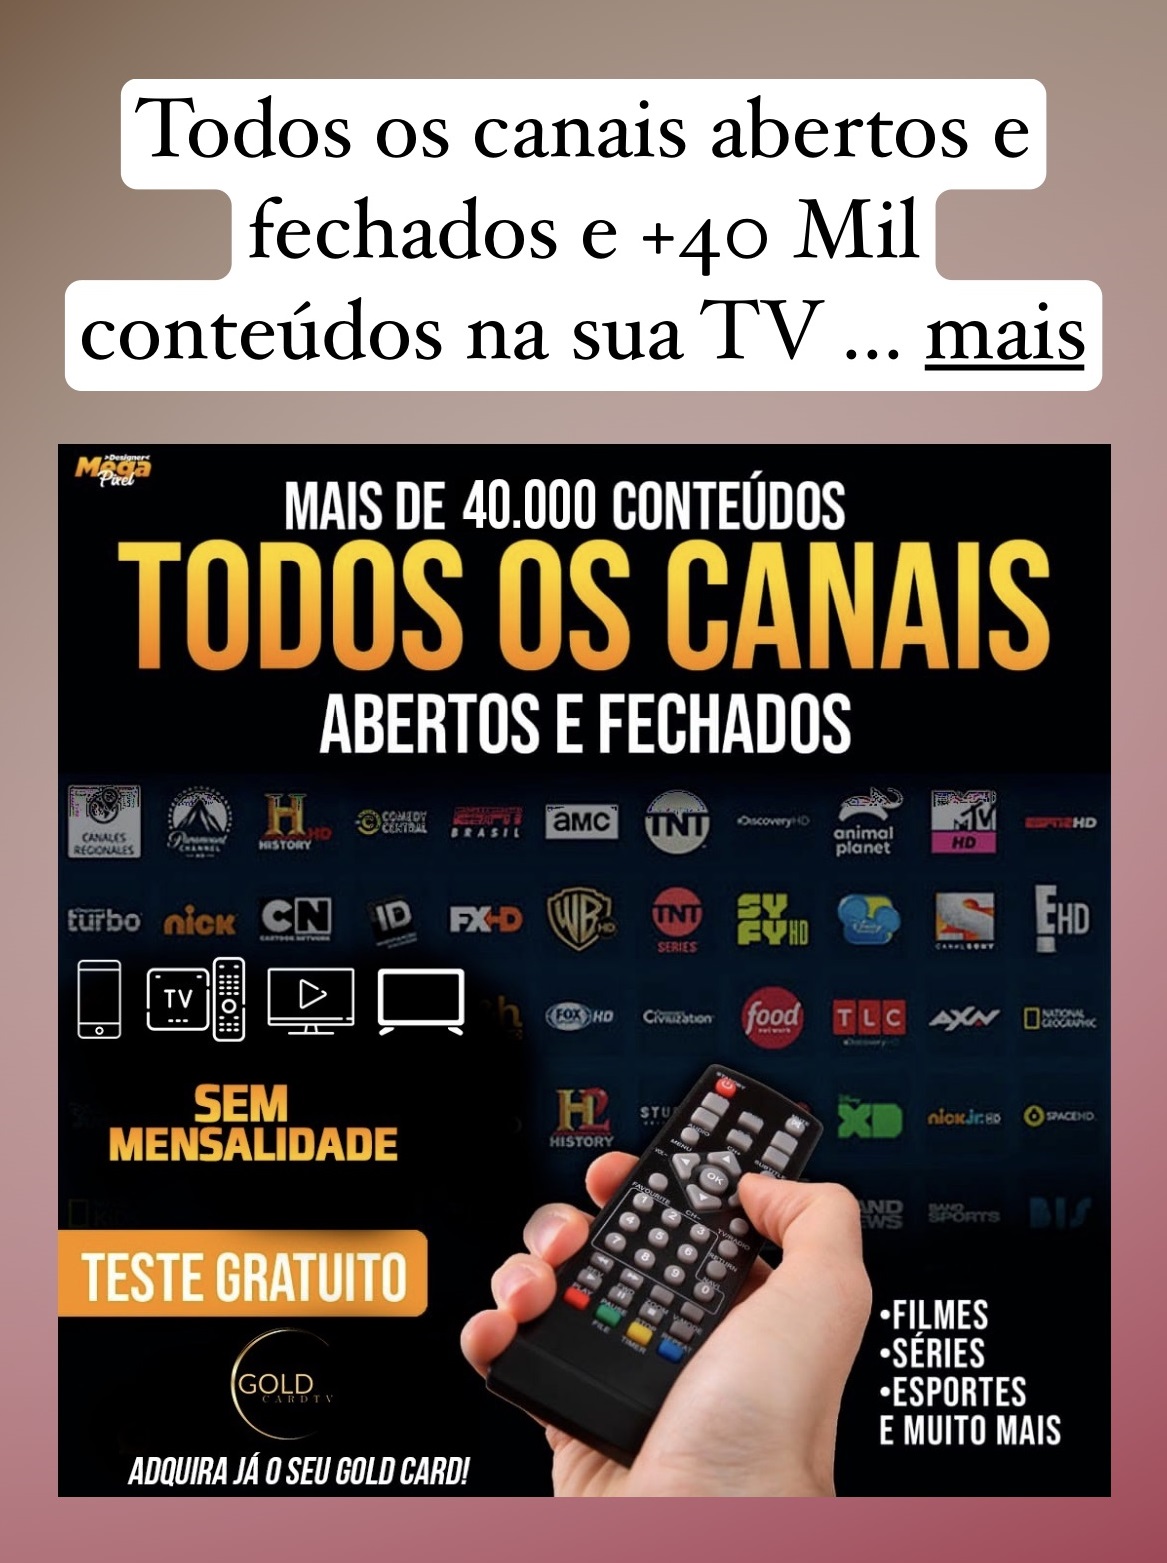 HBO Max fará série sobre surto de Aids no Brasil